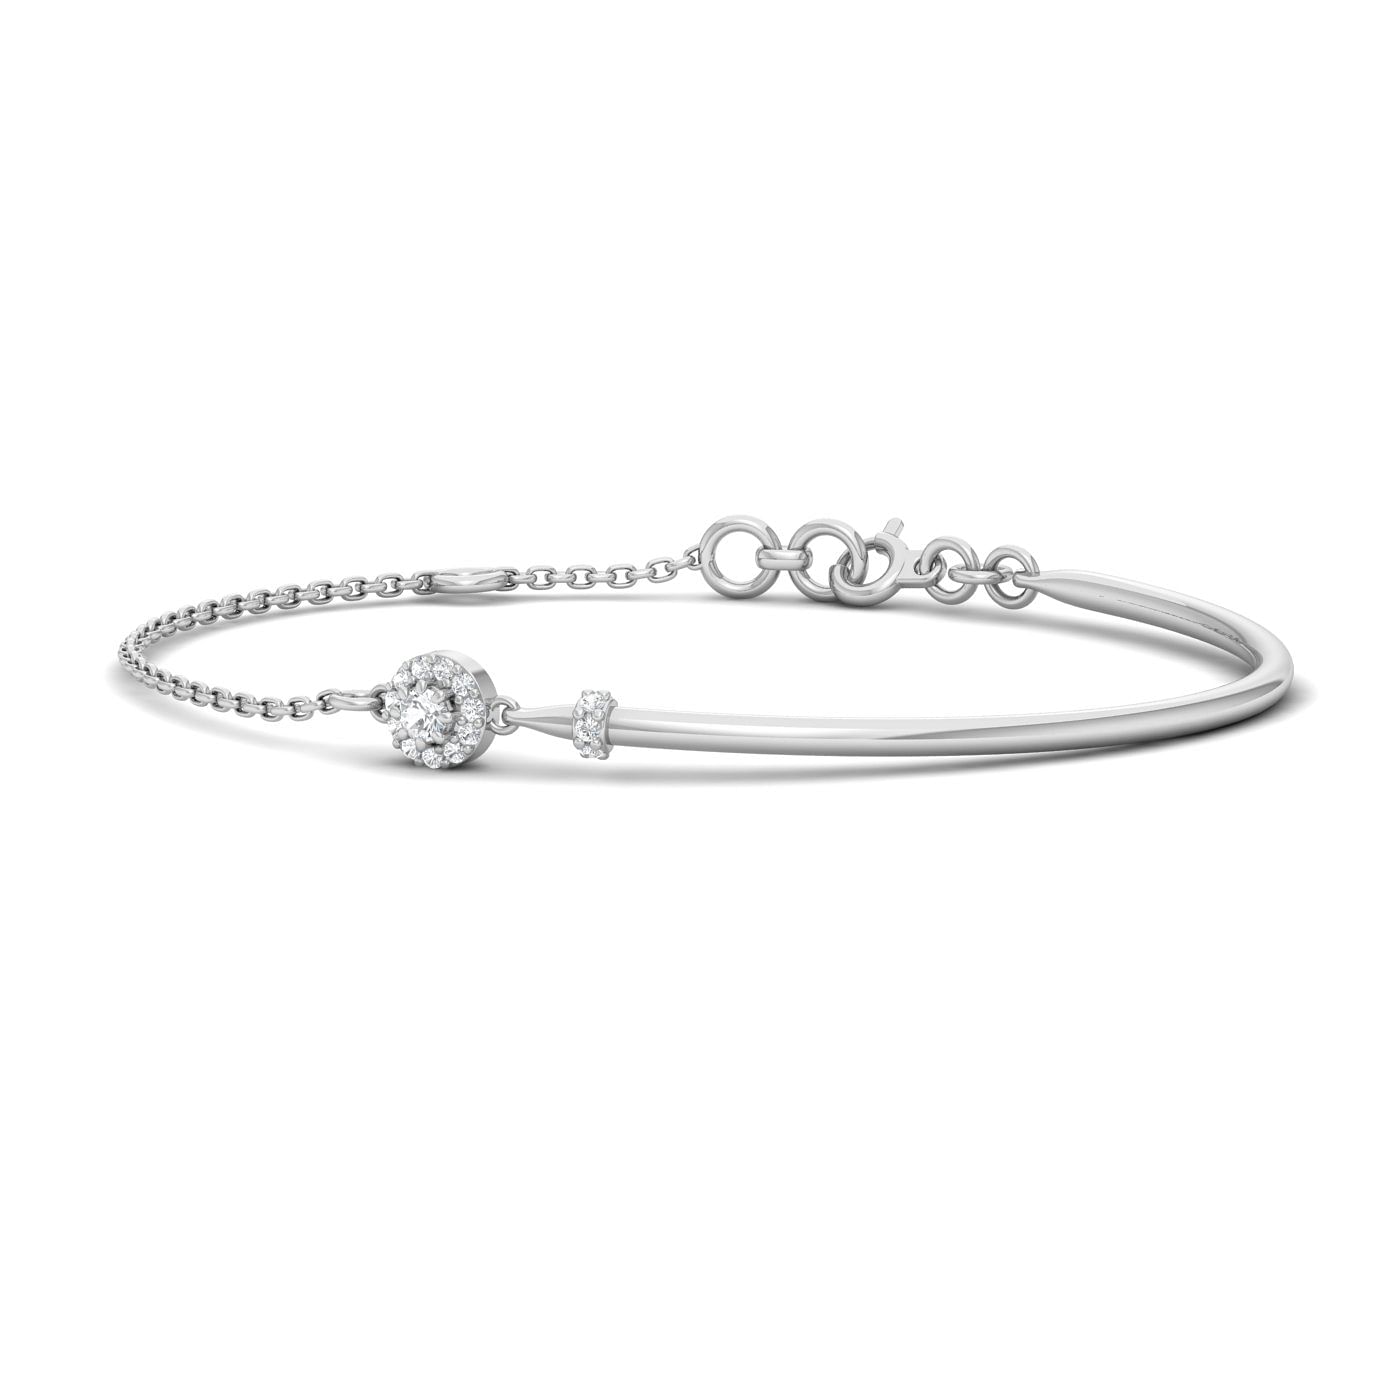 White Gold Damini Diamond Bracelet For Engagement Gift